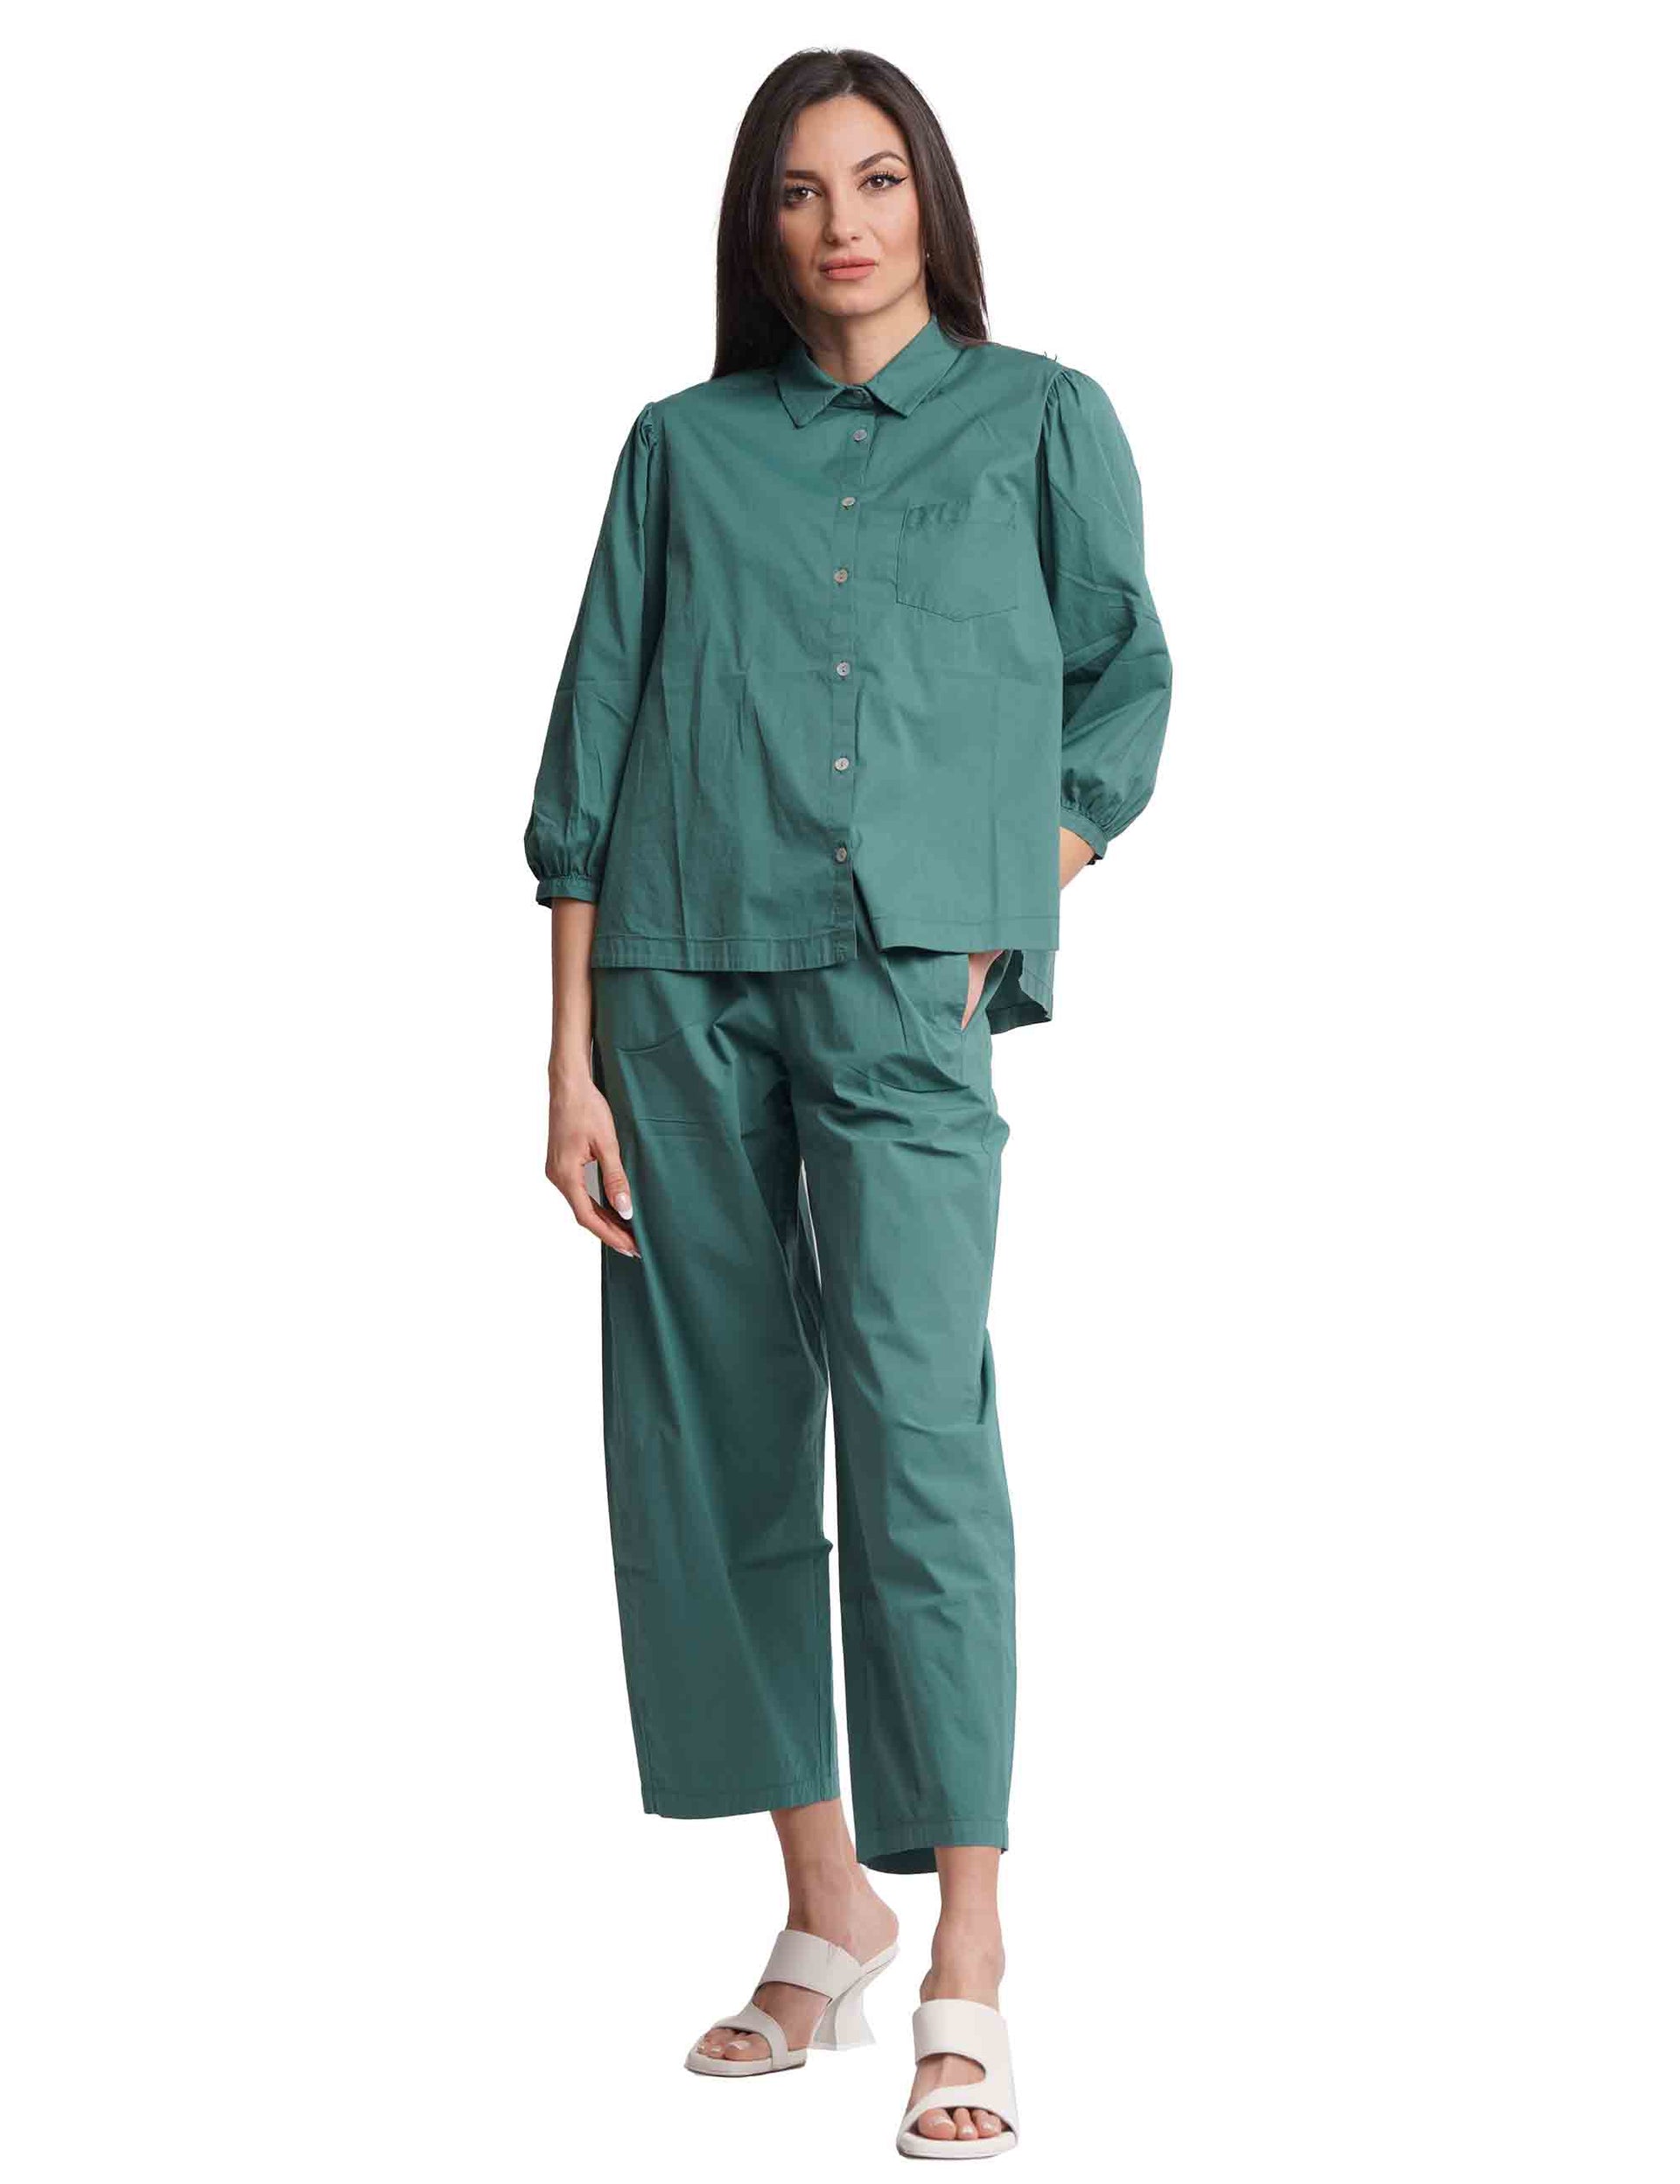 Camicie donna in cotone verde con maniche a sbuffo